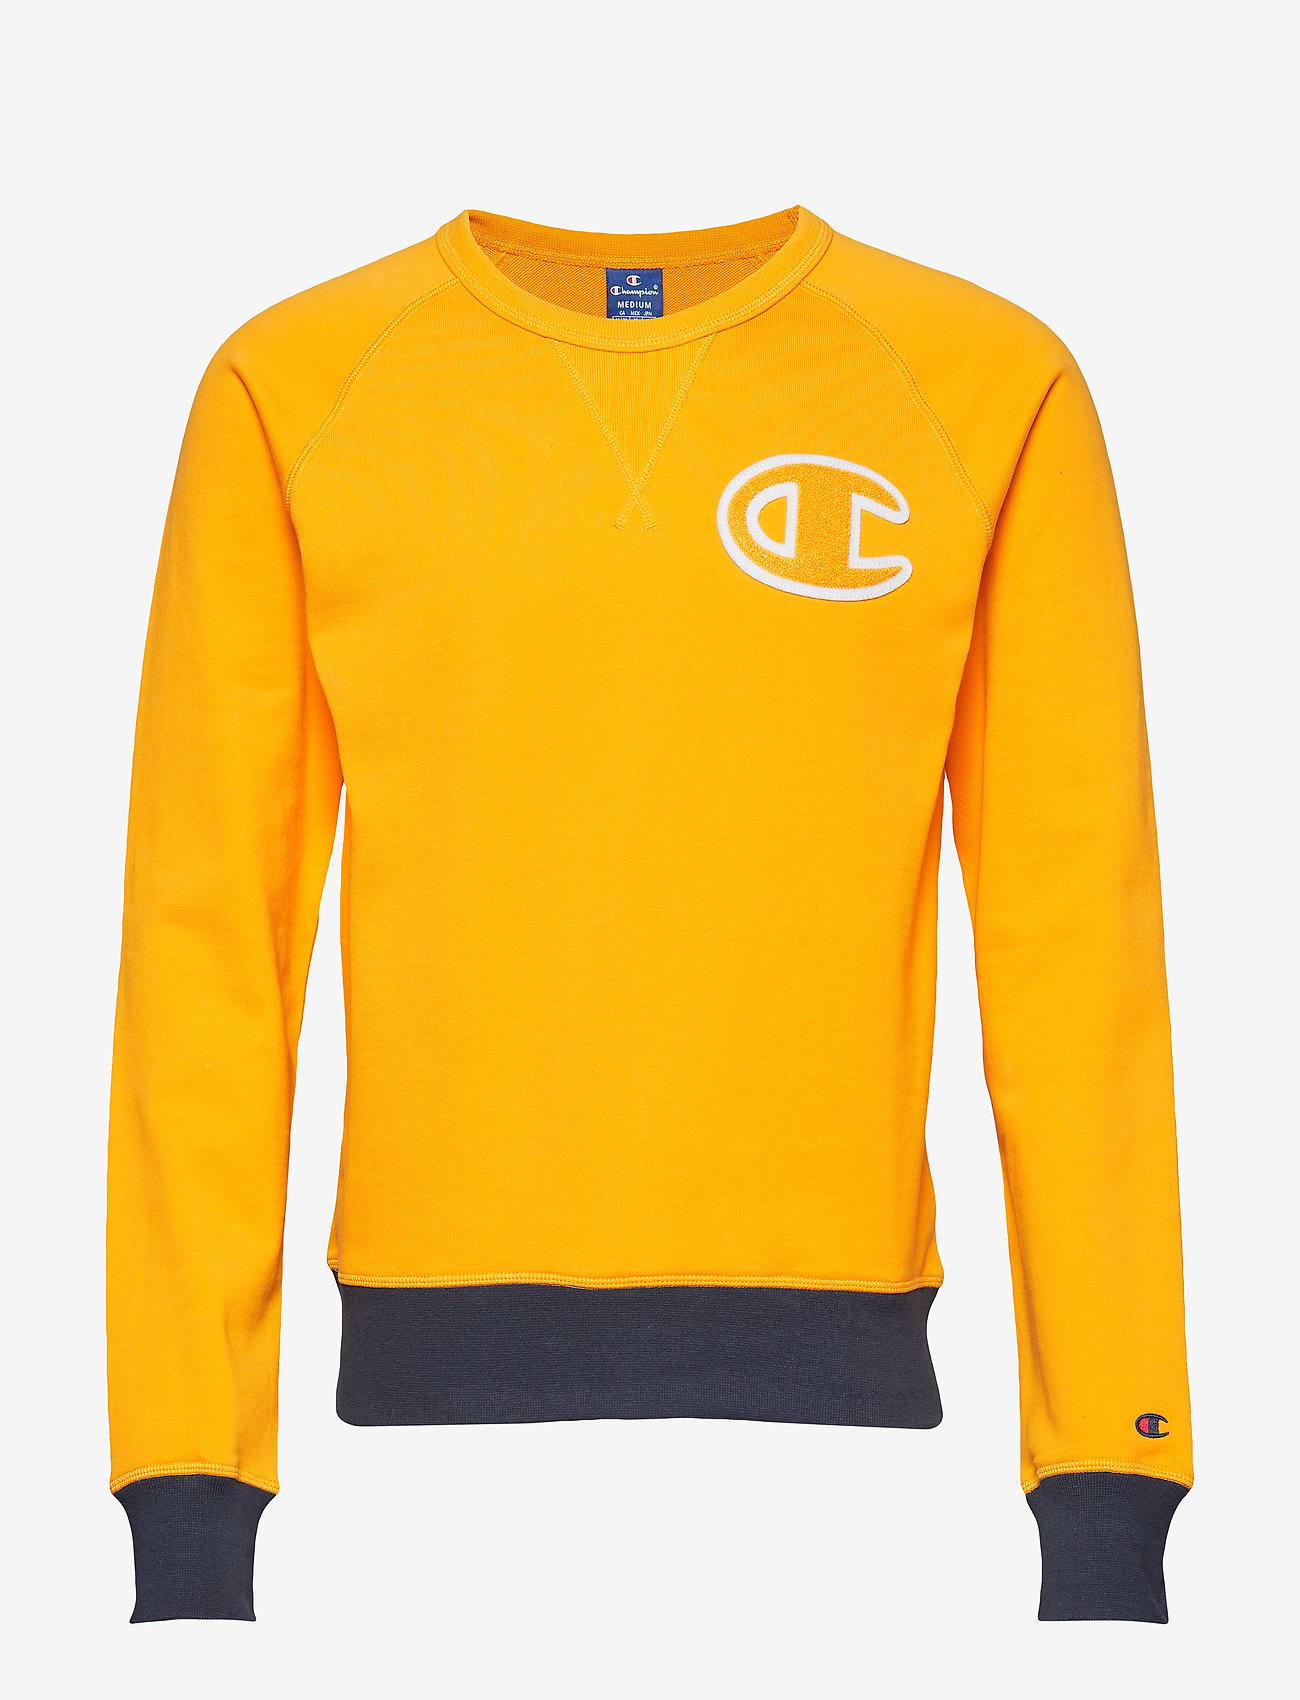 Crewneck Sweatshirt (Yellow) (26 